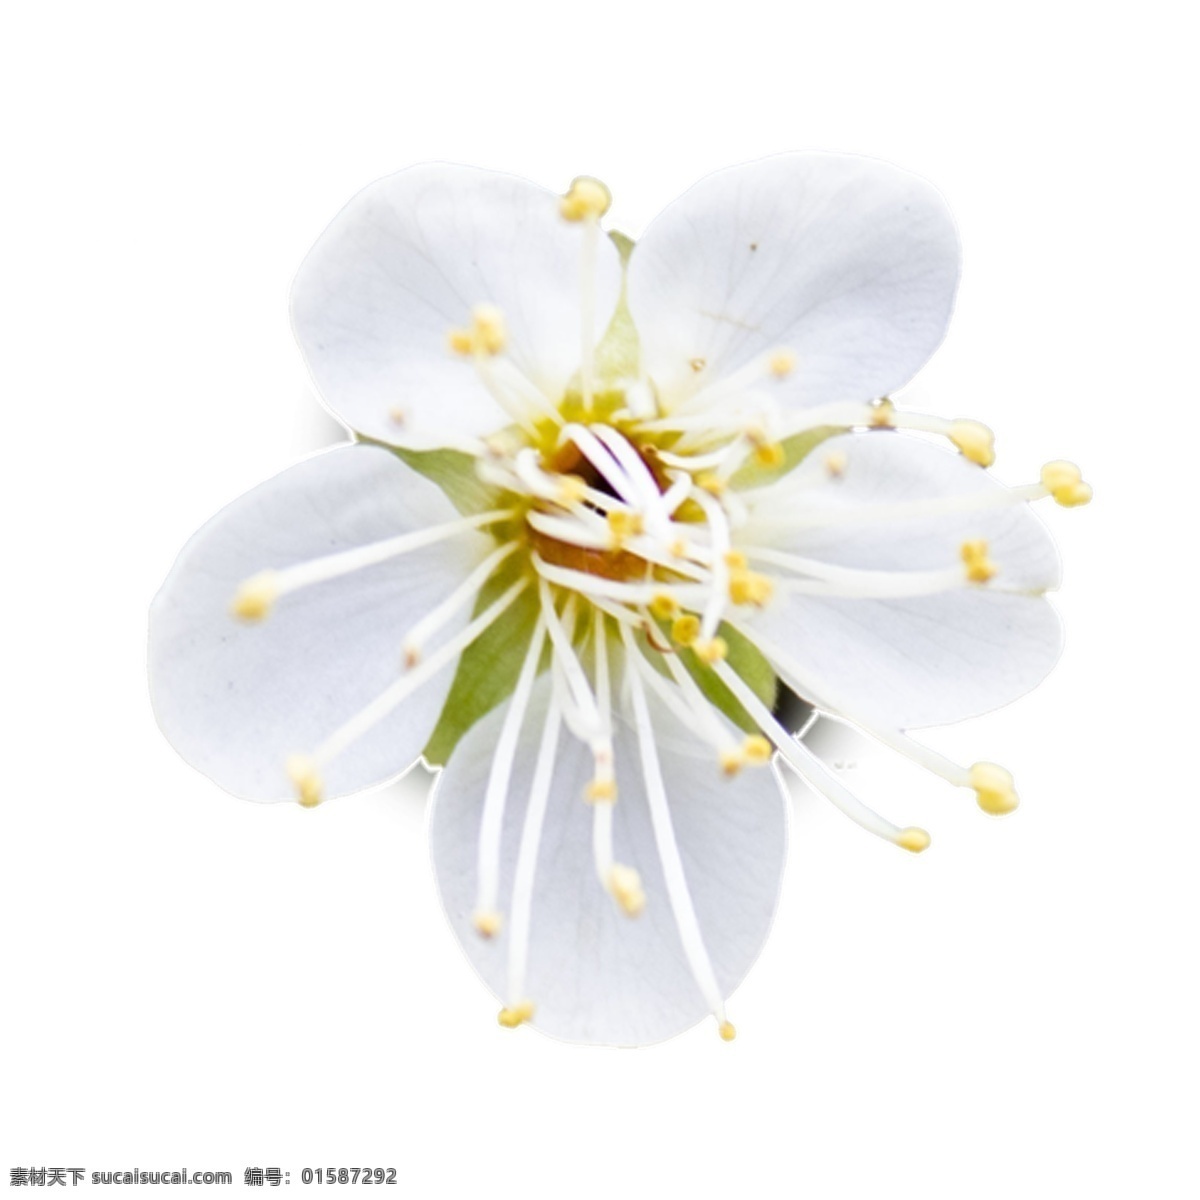 白色 黄色 春天 唯美 花朵 好看 梦幻 鲜艳 多彩 春日 春季 花 清新 自然 植物 自然景观